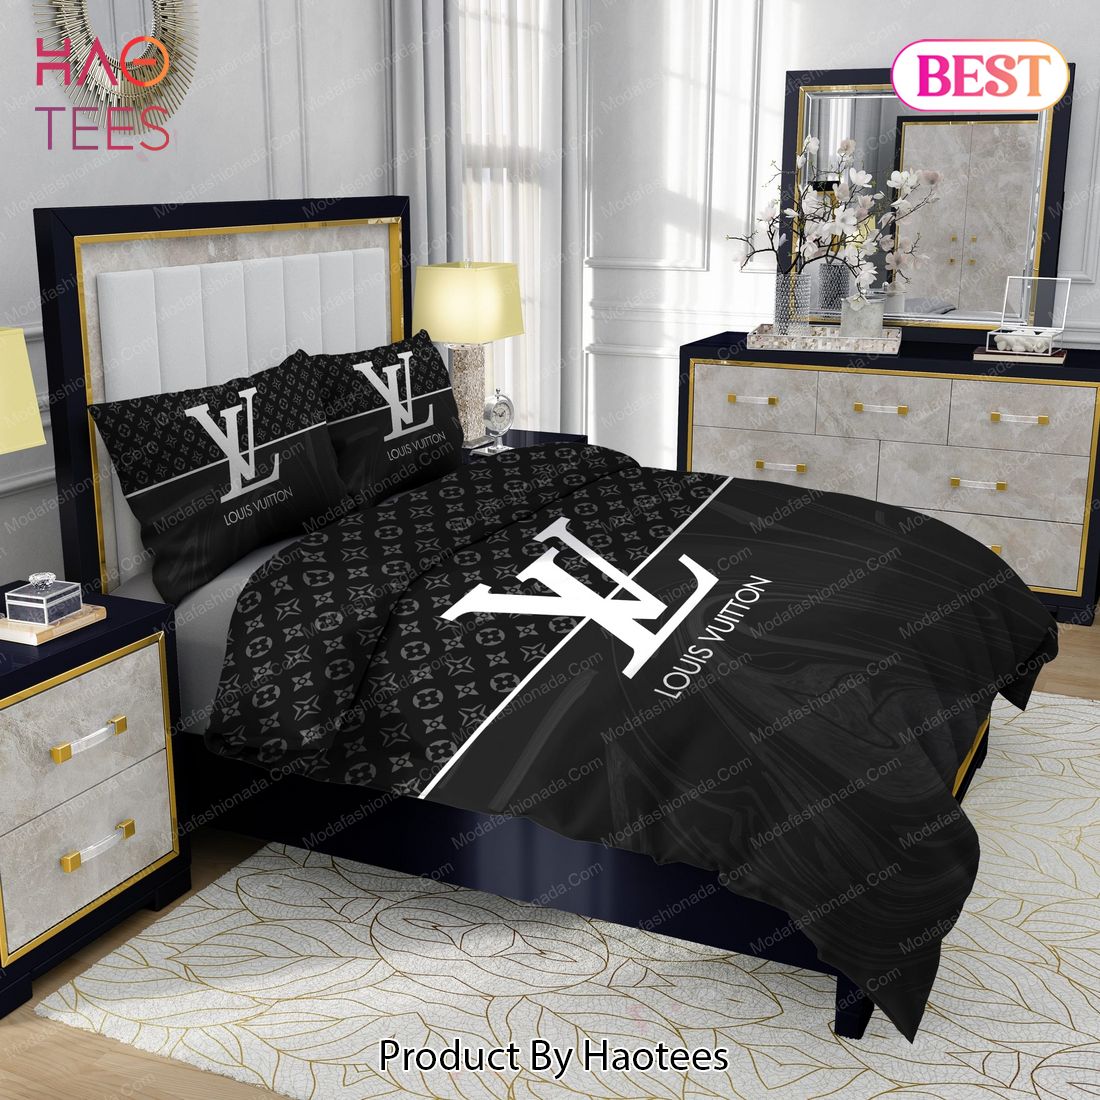 Black And White Veinstone Louis Vuitton Bedding Sets Bed Sets, Bedroom Sets,  Comforter Sets, Duvet Cover